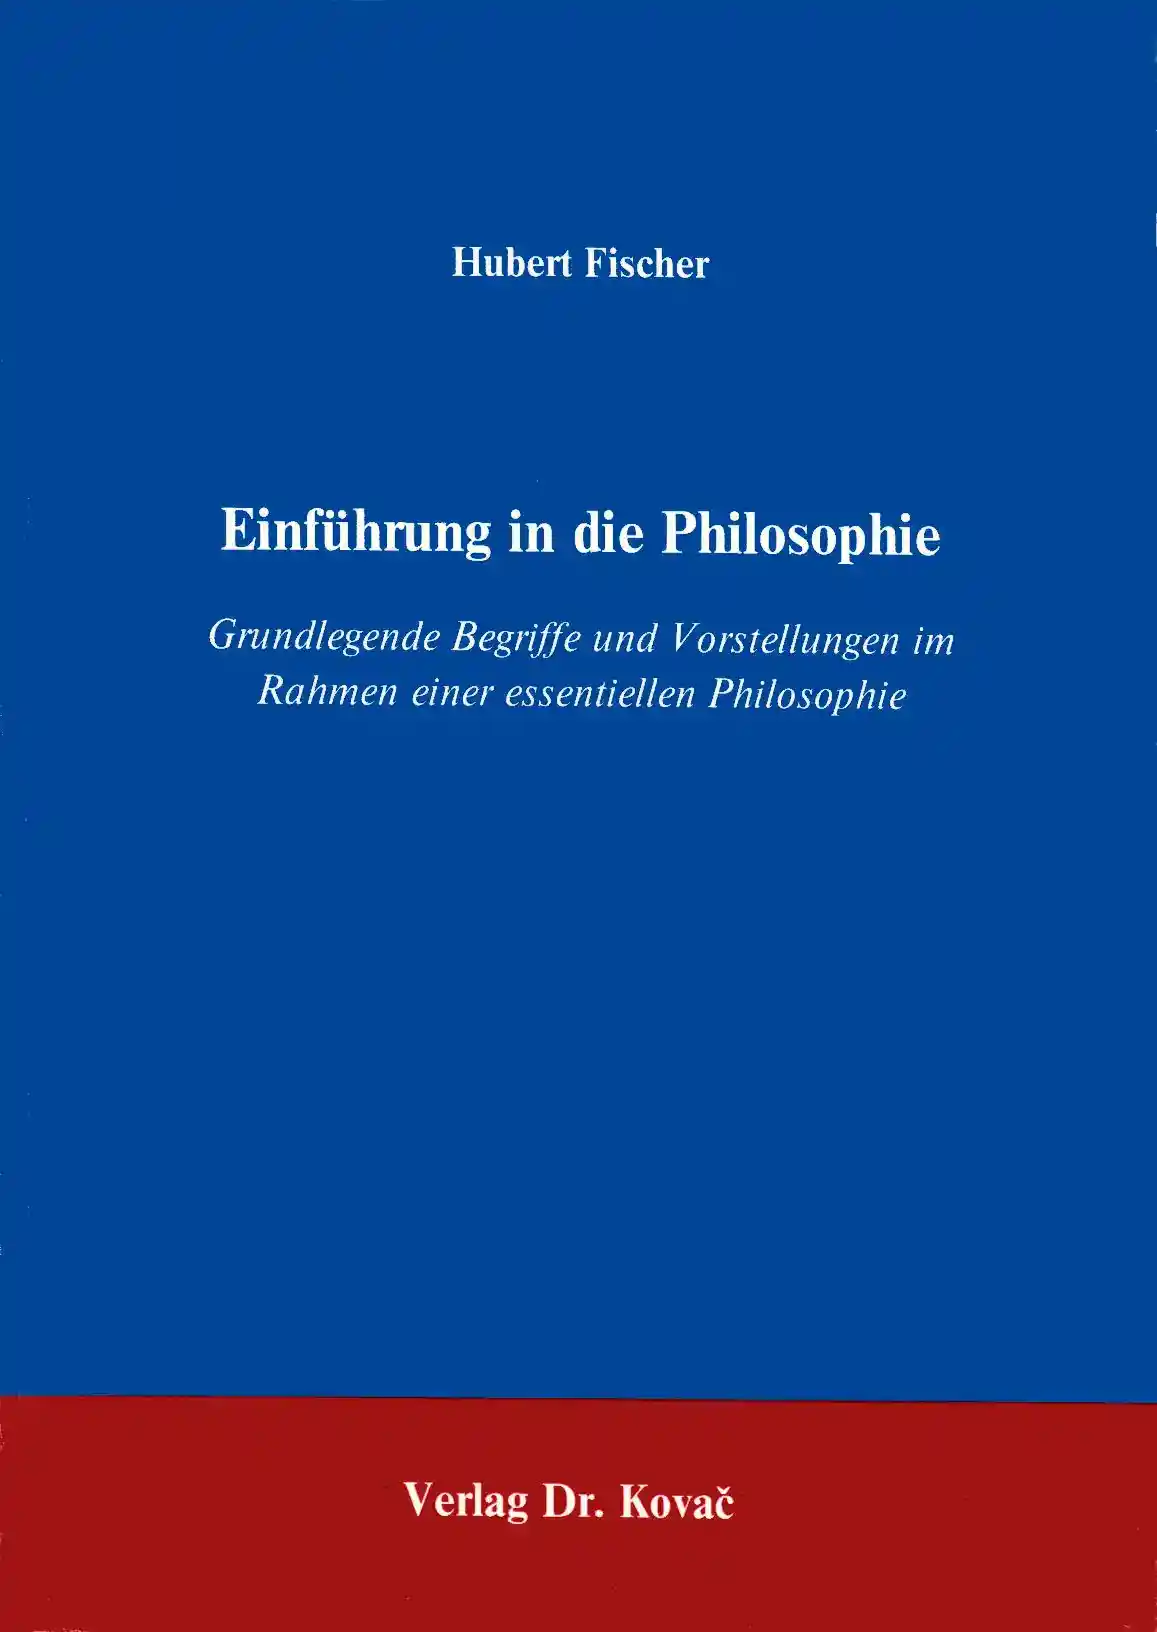 Einführung in die Philosophie (Forschungsarbeit)